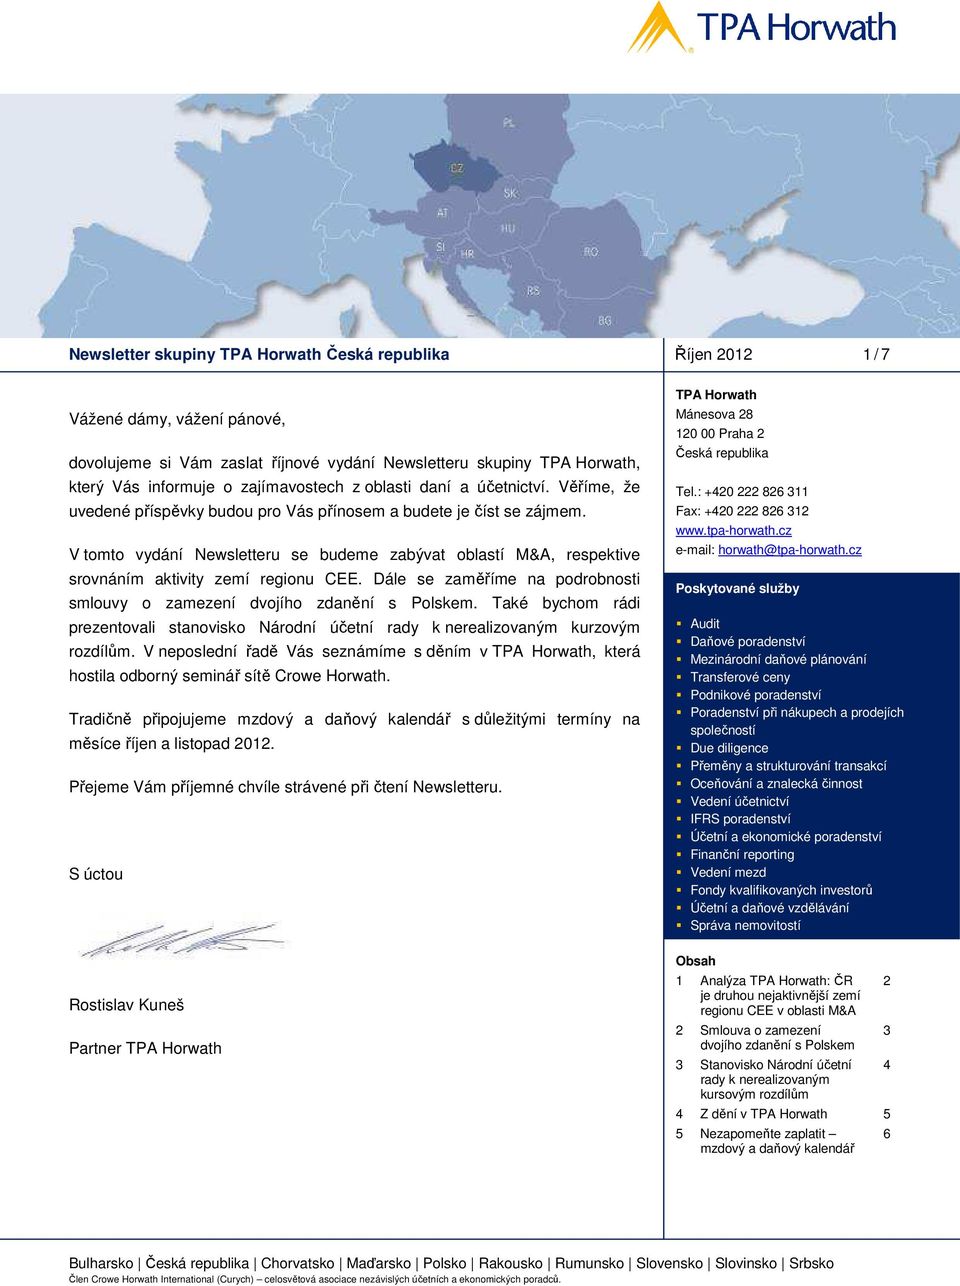 V tomto vydání Newsletteru se budeme zabývat oblastí M&A, respektive srovnáním aktivity zemí regionu CEE. Dále se zaměříme na podrobnosti smlouvy o zamezení dvojího zdanění s Polskem.